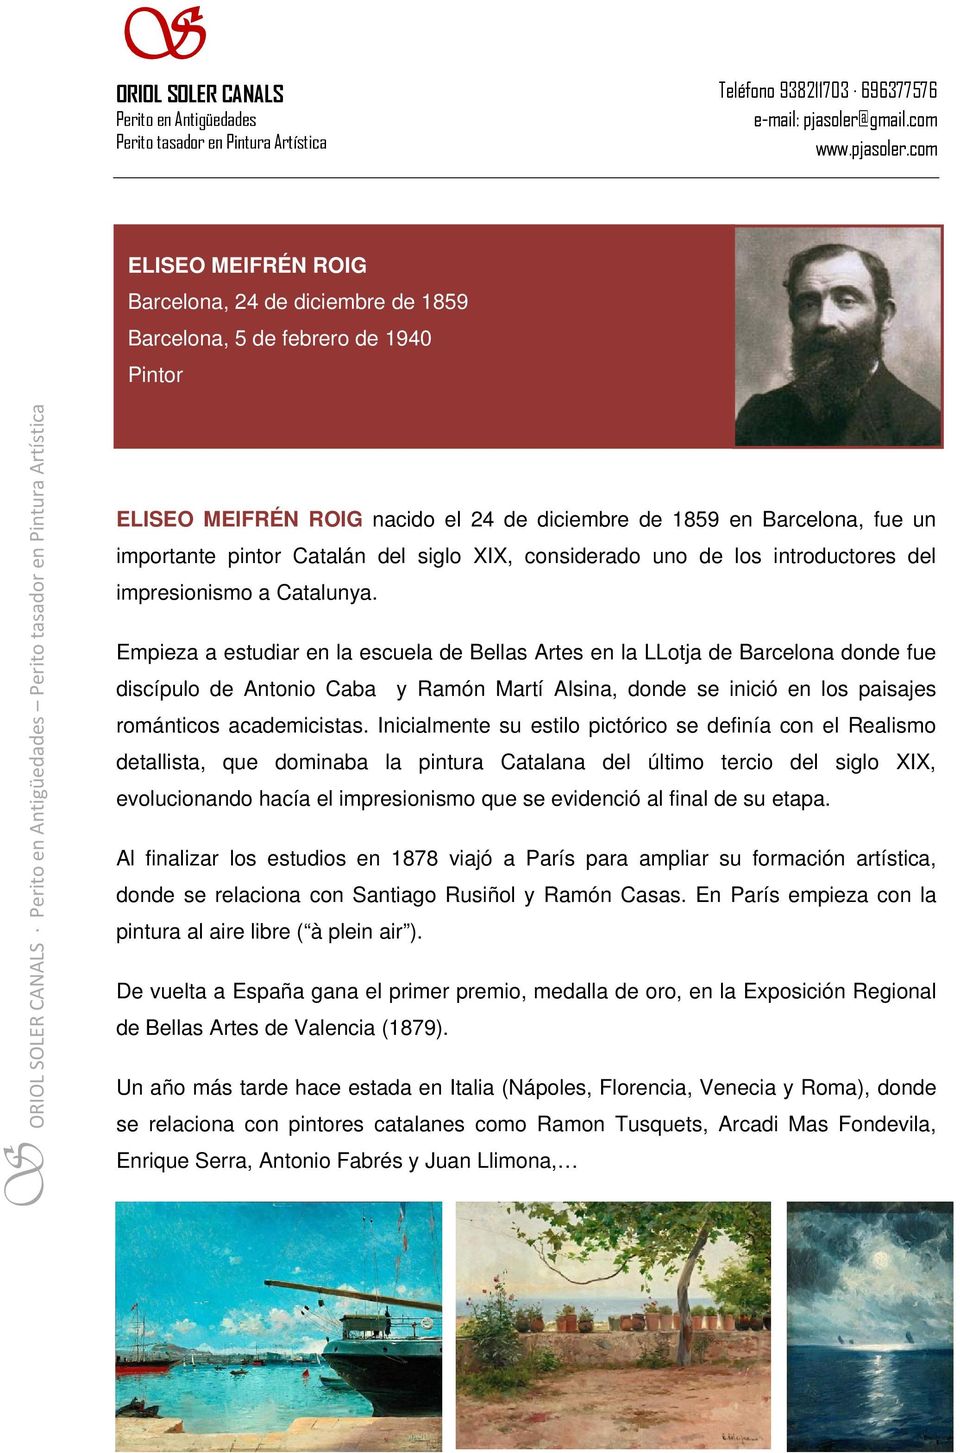 Empieza a estudiar en la escuela de Bellas Artes en la LLotja de Barcelona donde fue discípulo de Antonio Caba y Ramón Martí Alsina, donde se inició en los paisajes románticos academicistas.